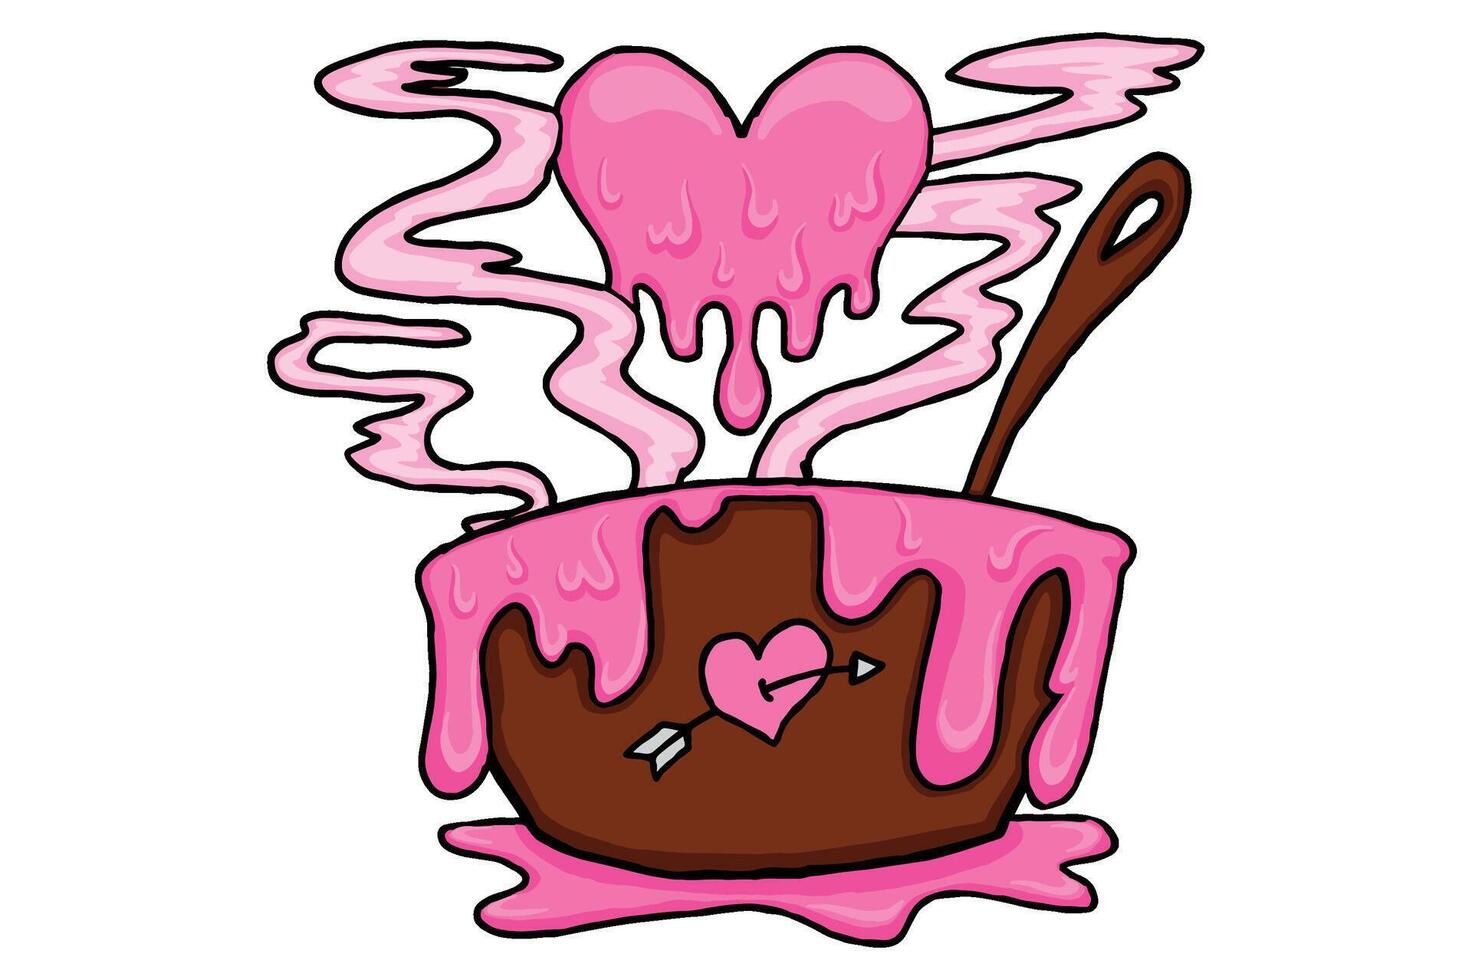 valentine - rosa kärlek trolldryck framställning bearbeta vektor